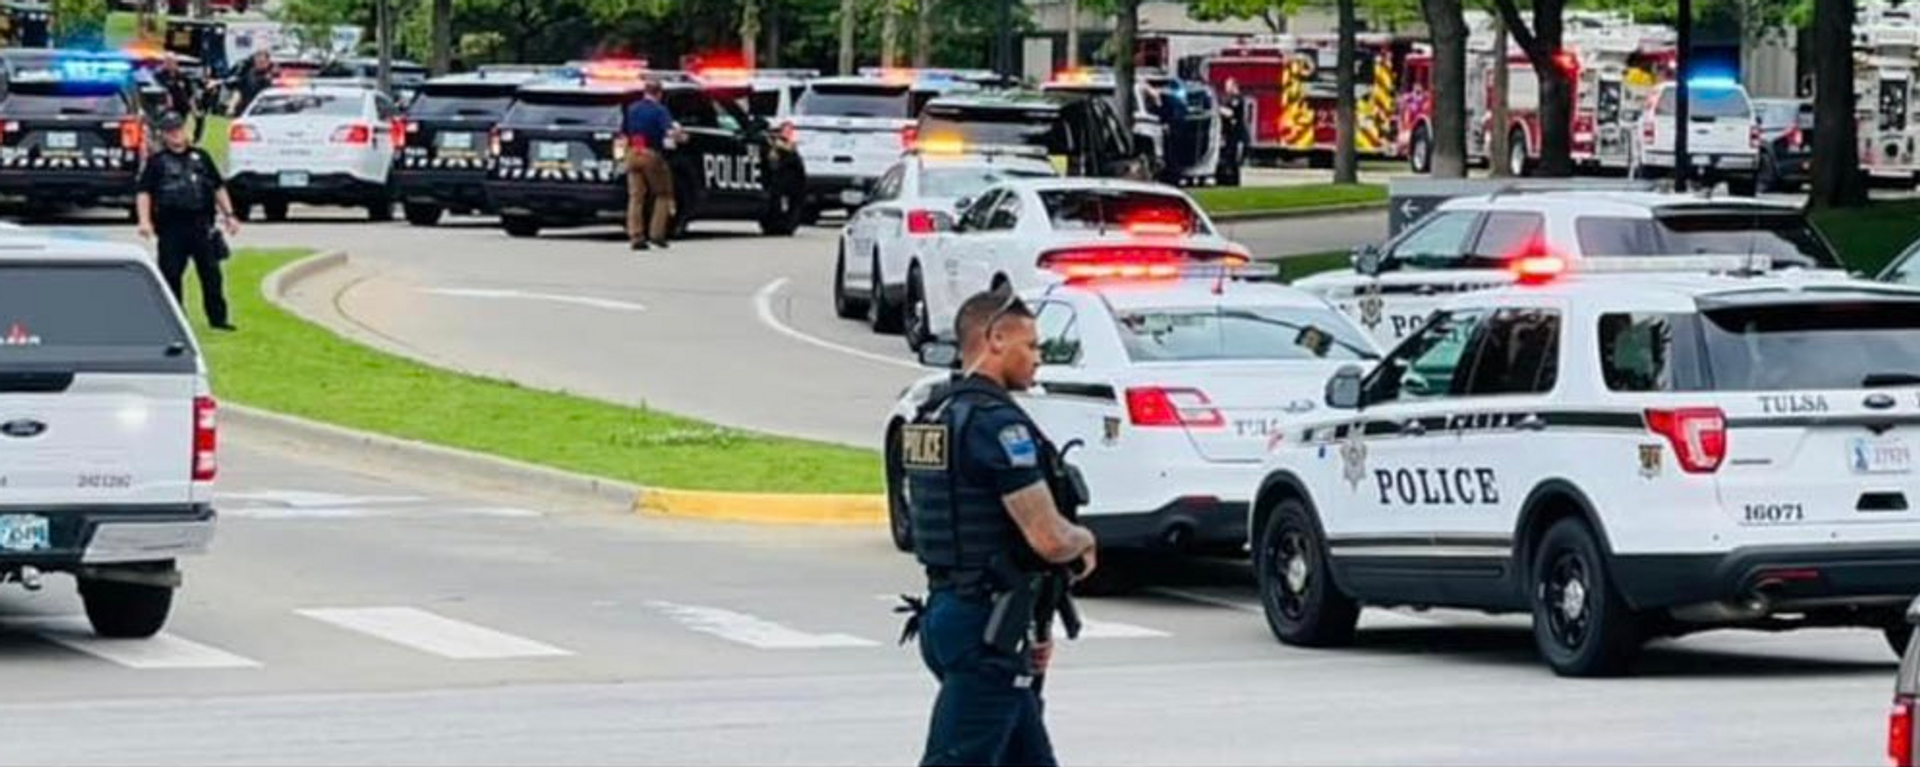 La policía llega tras el tiroteo mortal en la ciudad de Tulsa el 1 de junio del 2022 (Imagen referencial) - Sputnik Mundo, 1920, 07.05.2023